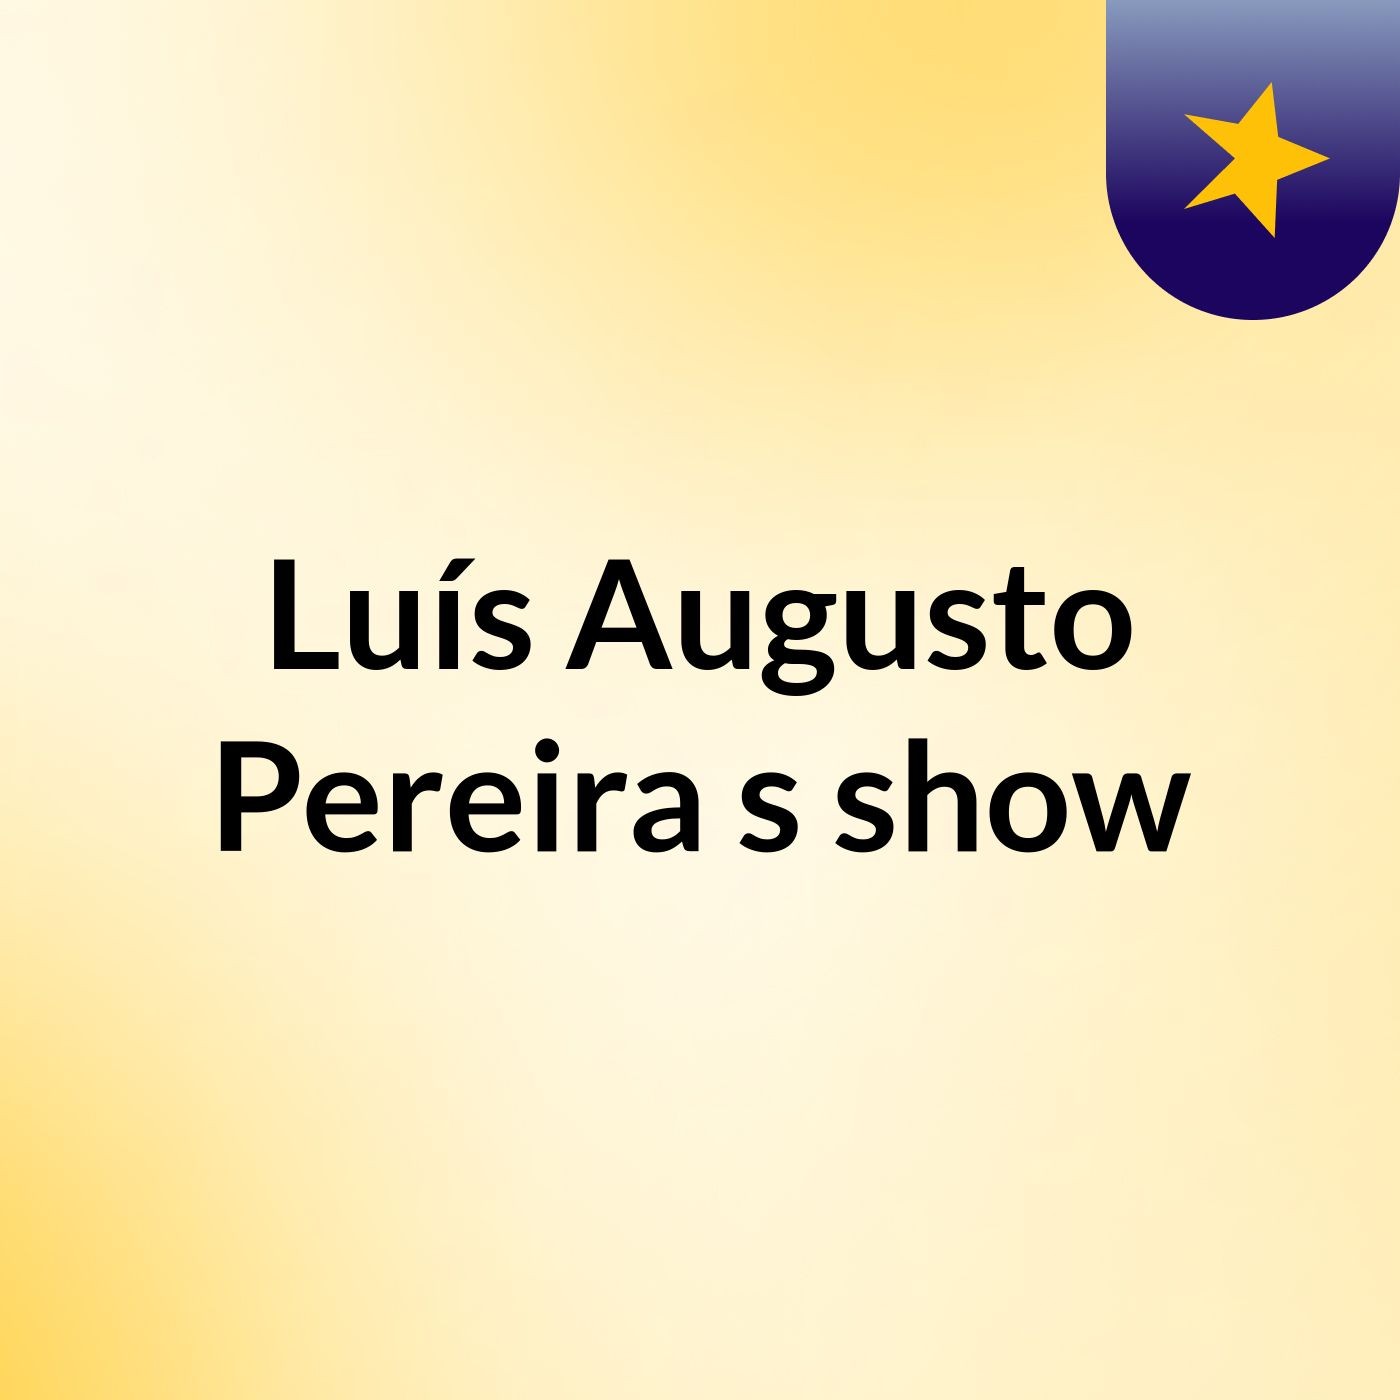 Luís Augusto Pereira's show